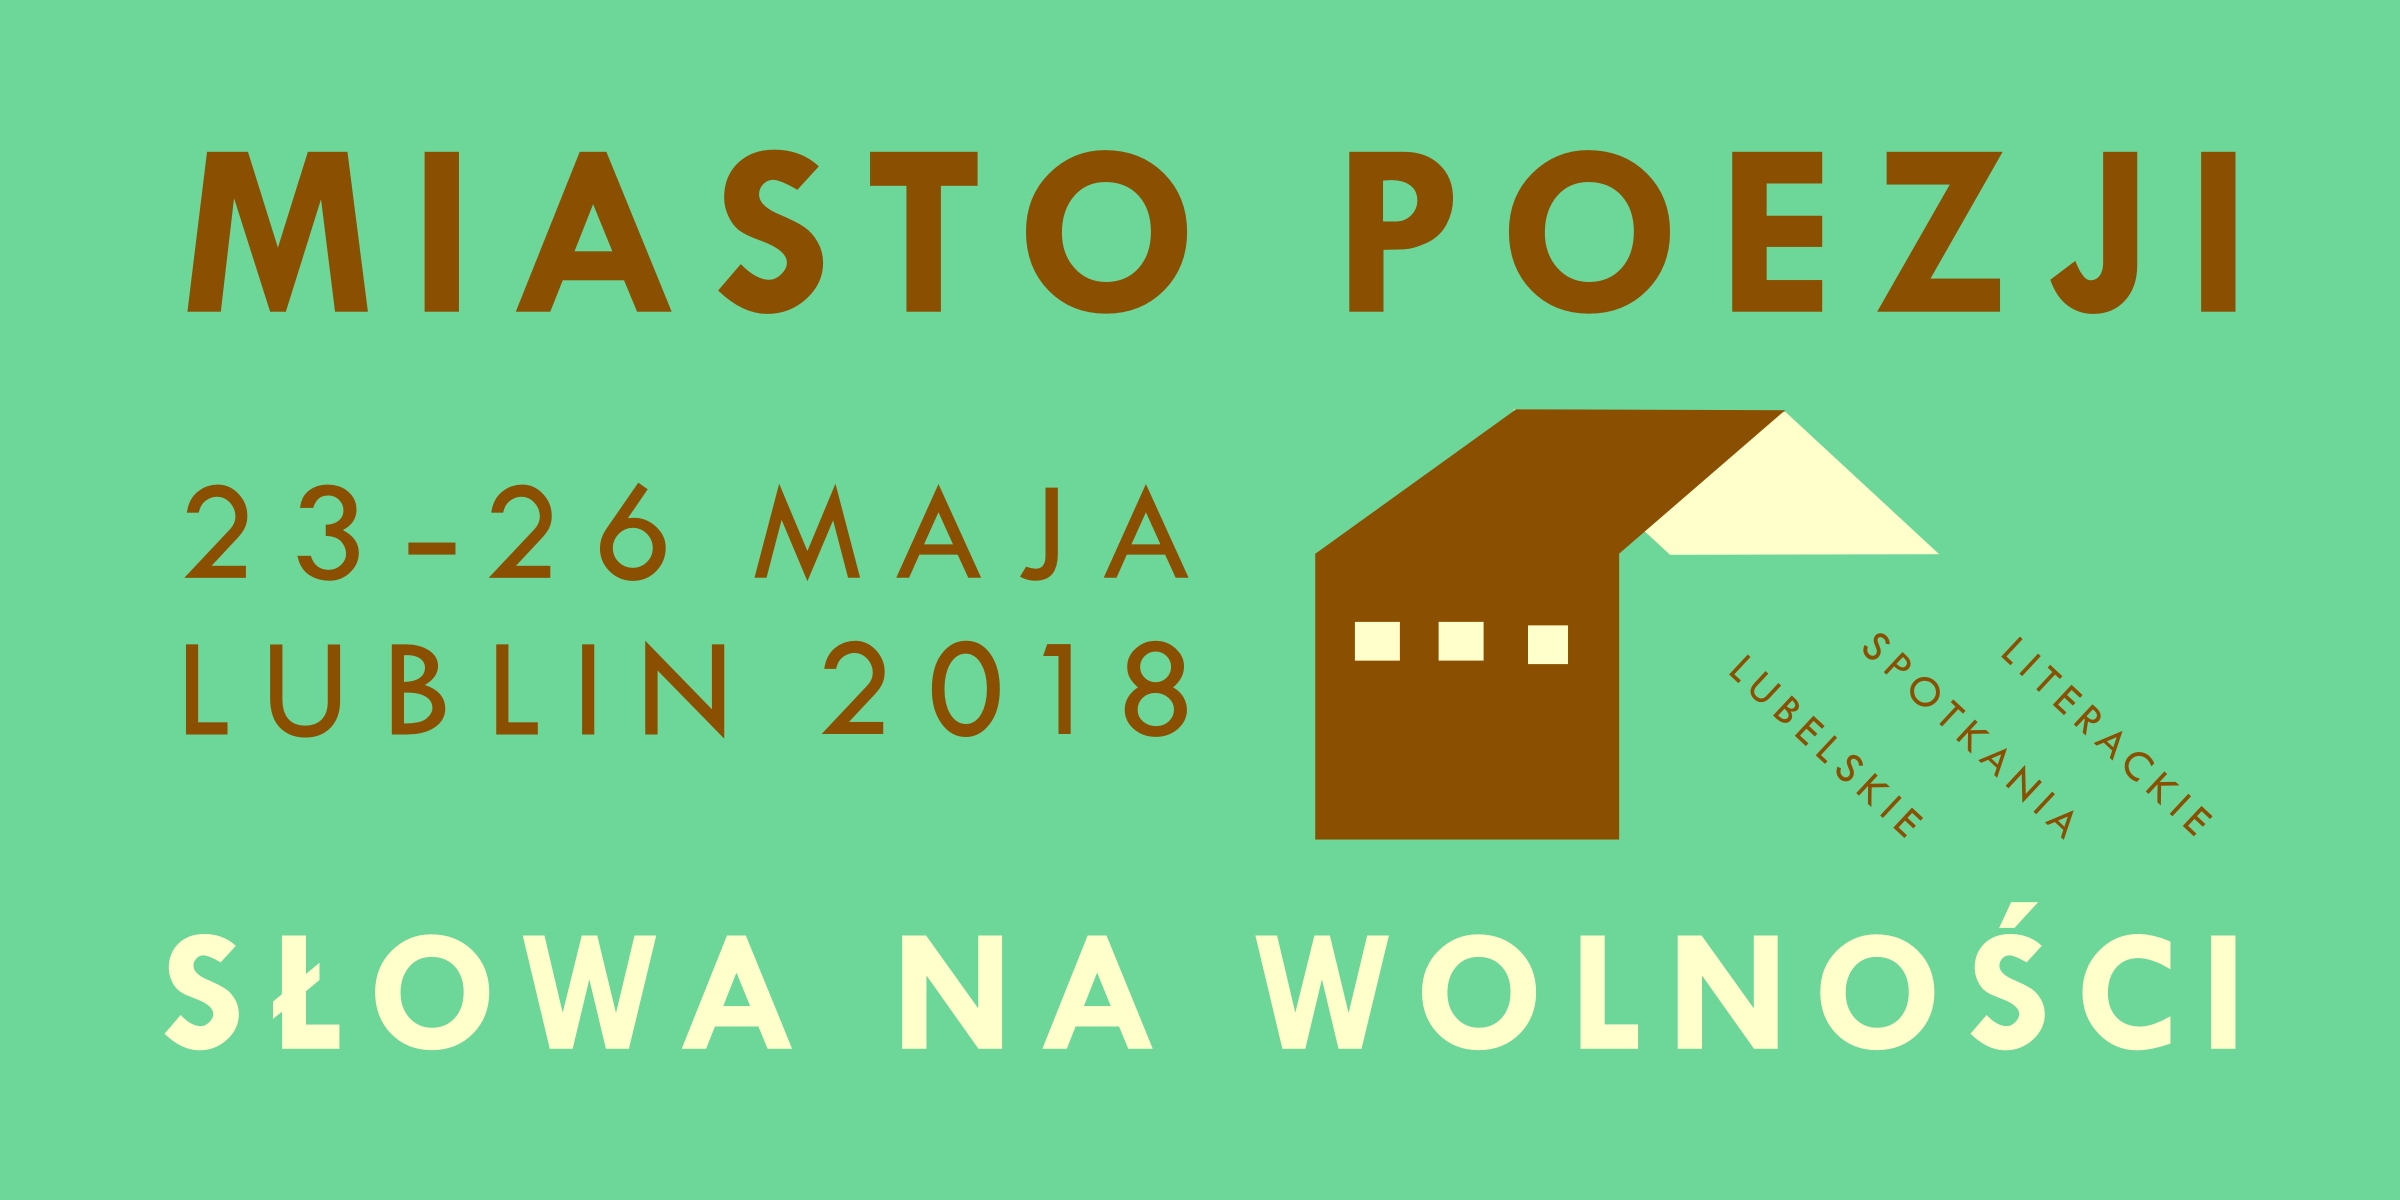 Festiwal Miasto Poezji, Lublin, plakat (źródło: materiały prasowe organizatora)